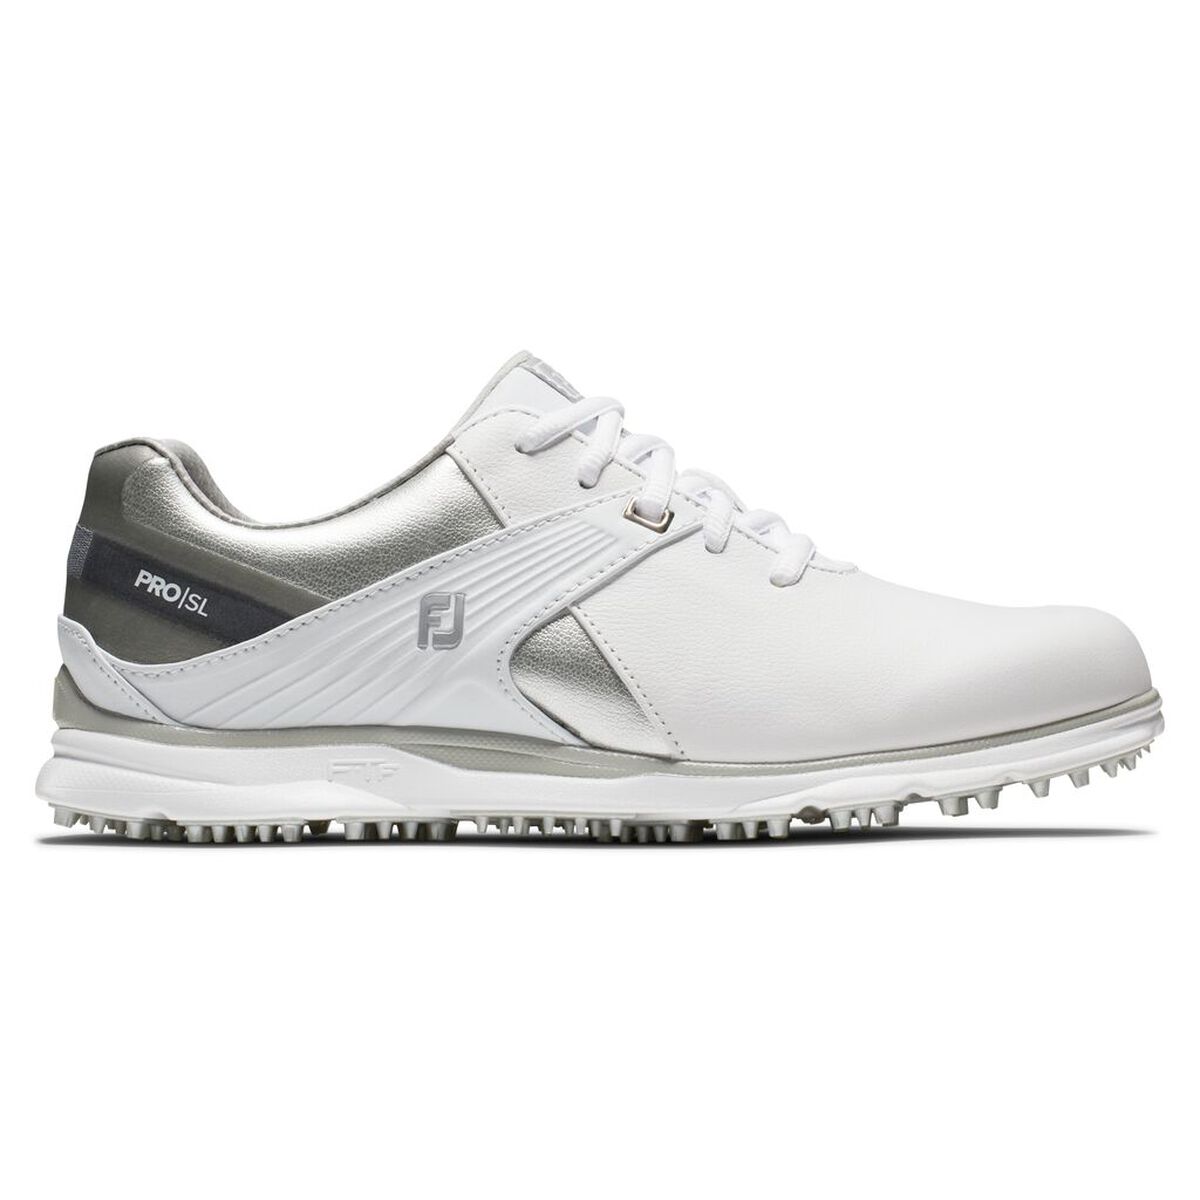 풋조이 우먼 골프화 FootJoy Pro,SL Womens Golf Shoe - White/Silver (Previous Season Style)